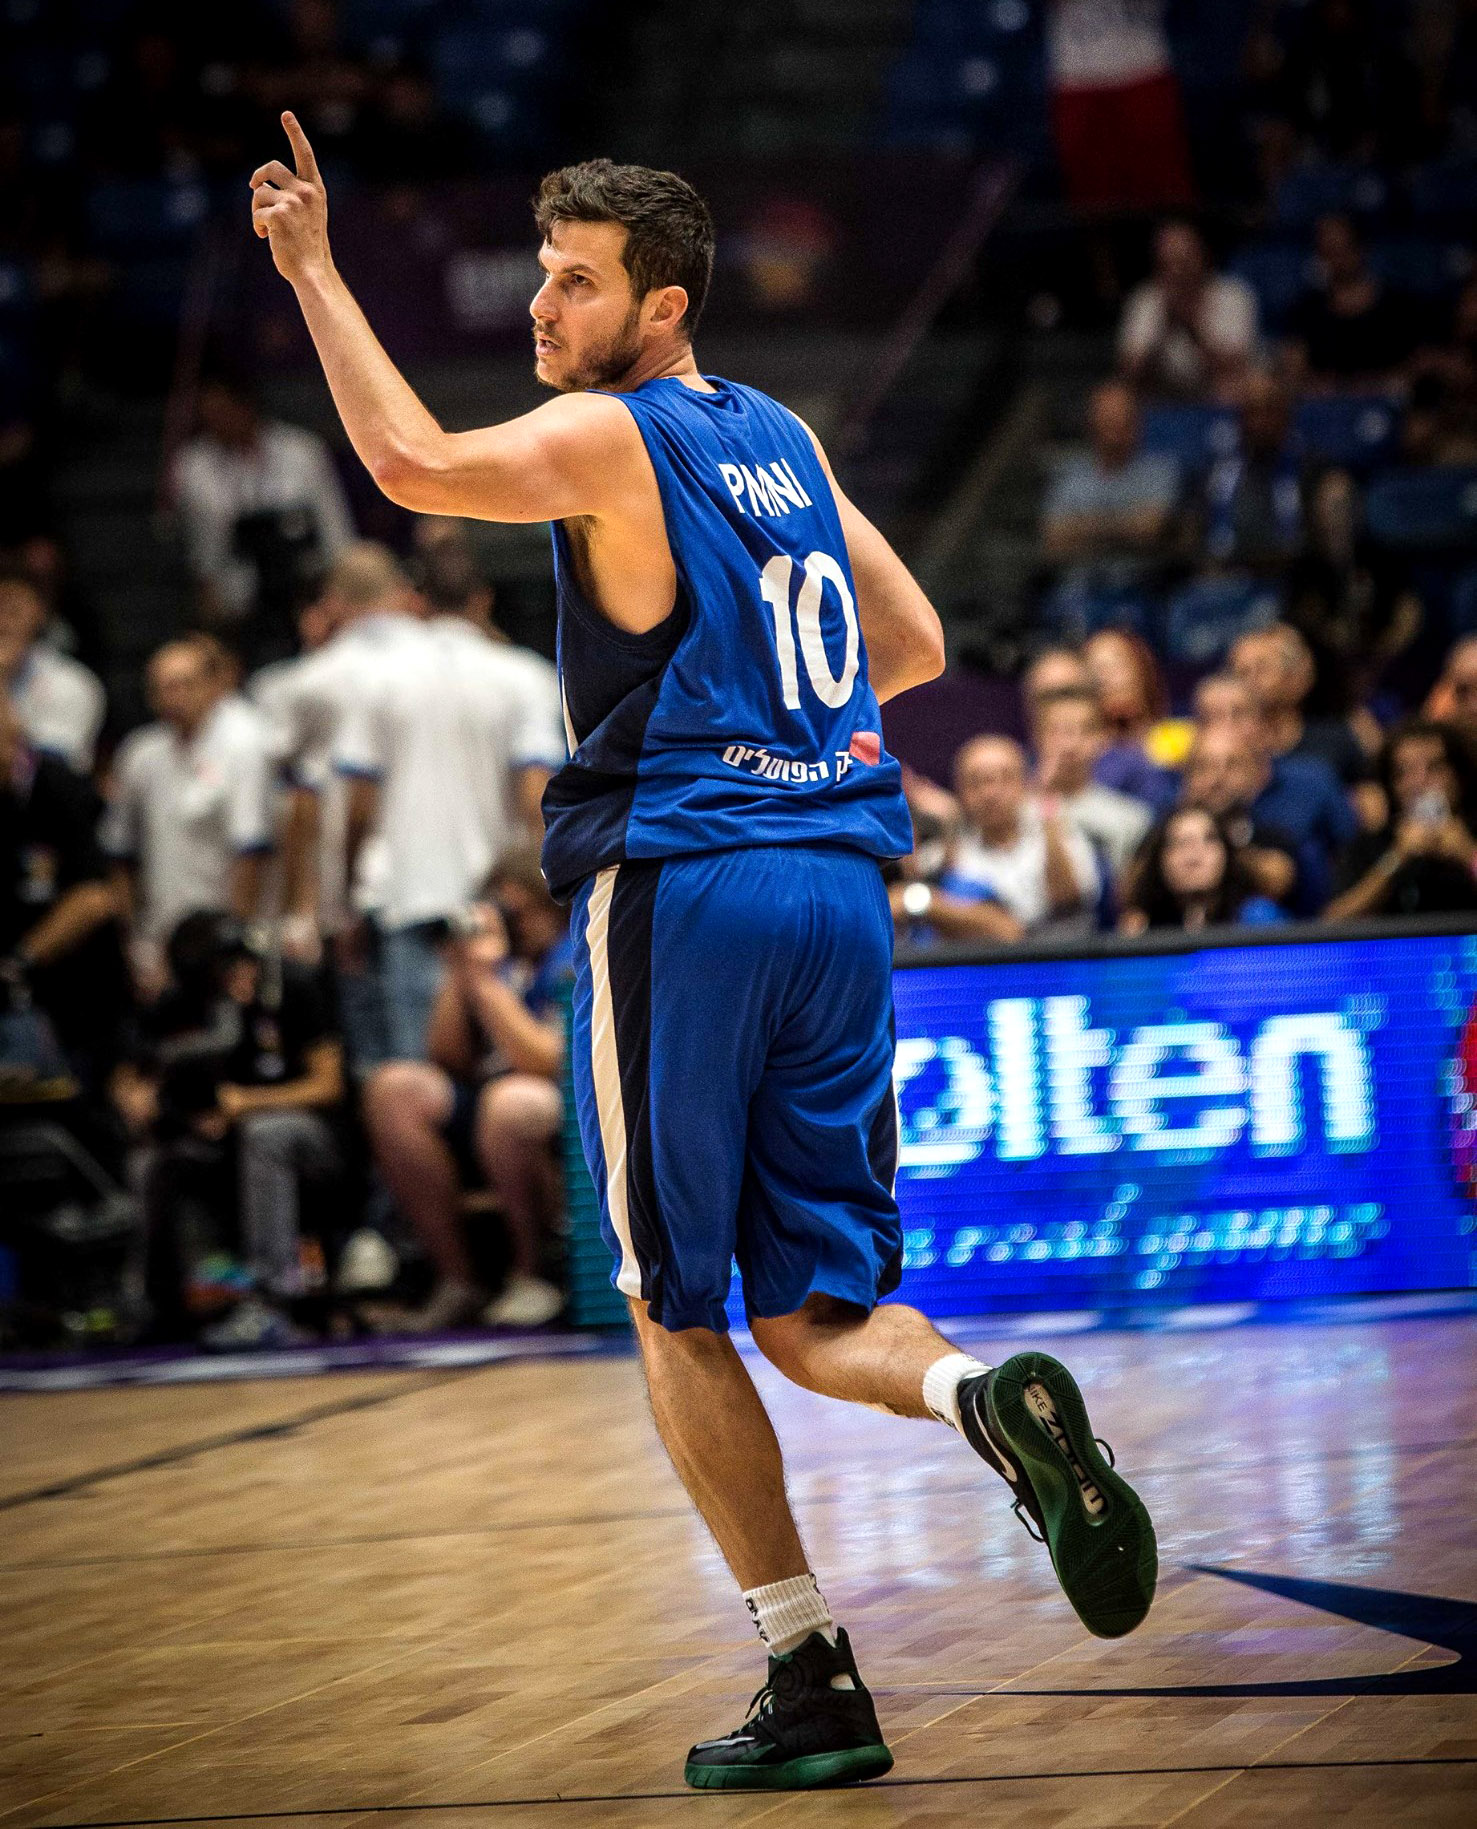 גיא פניני, לאחר השלשה שהכריעה את המשחק (צילום: איגוד הכדורסל בישראל).